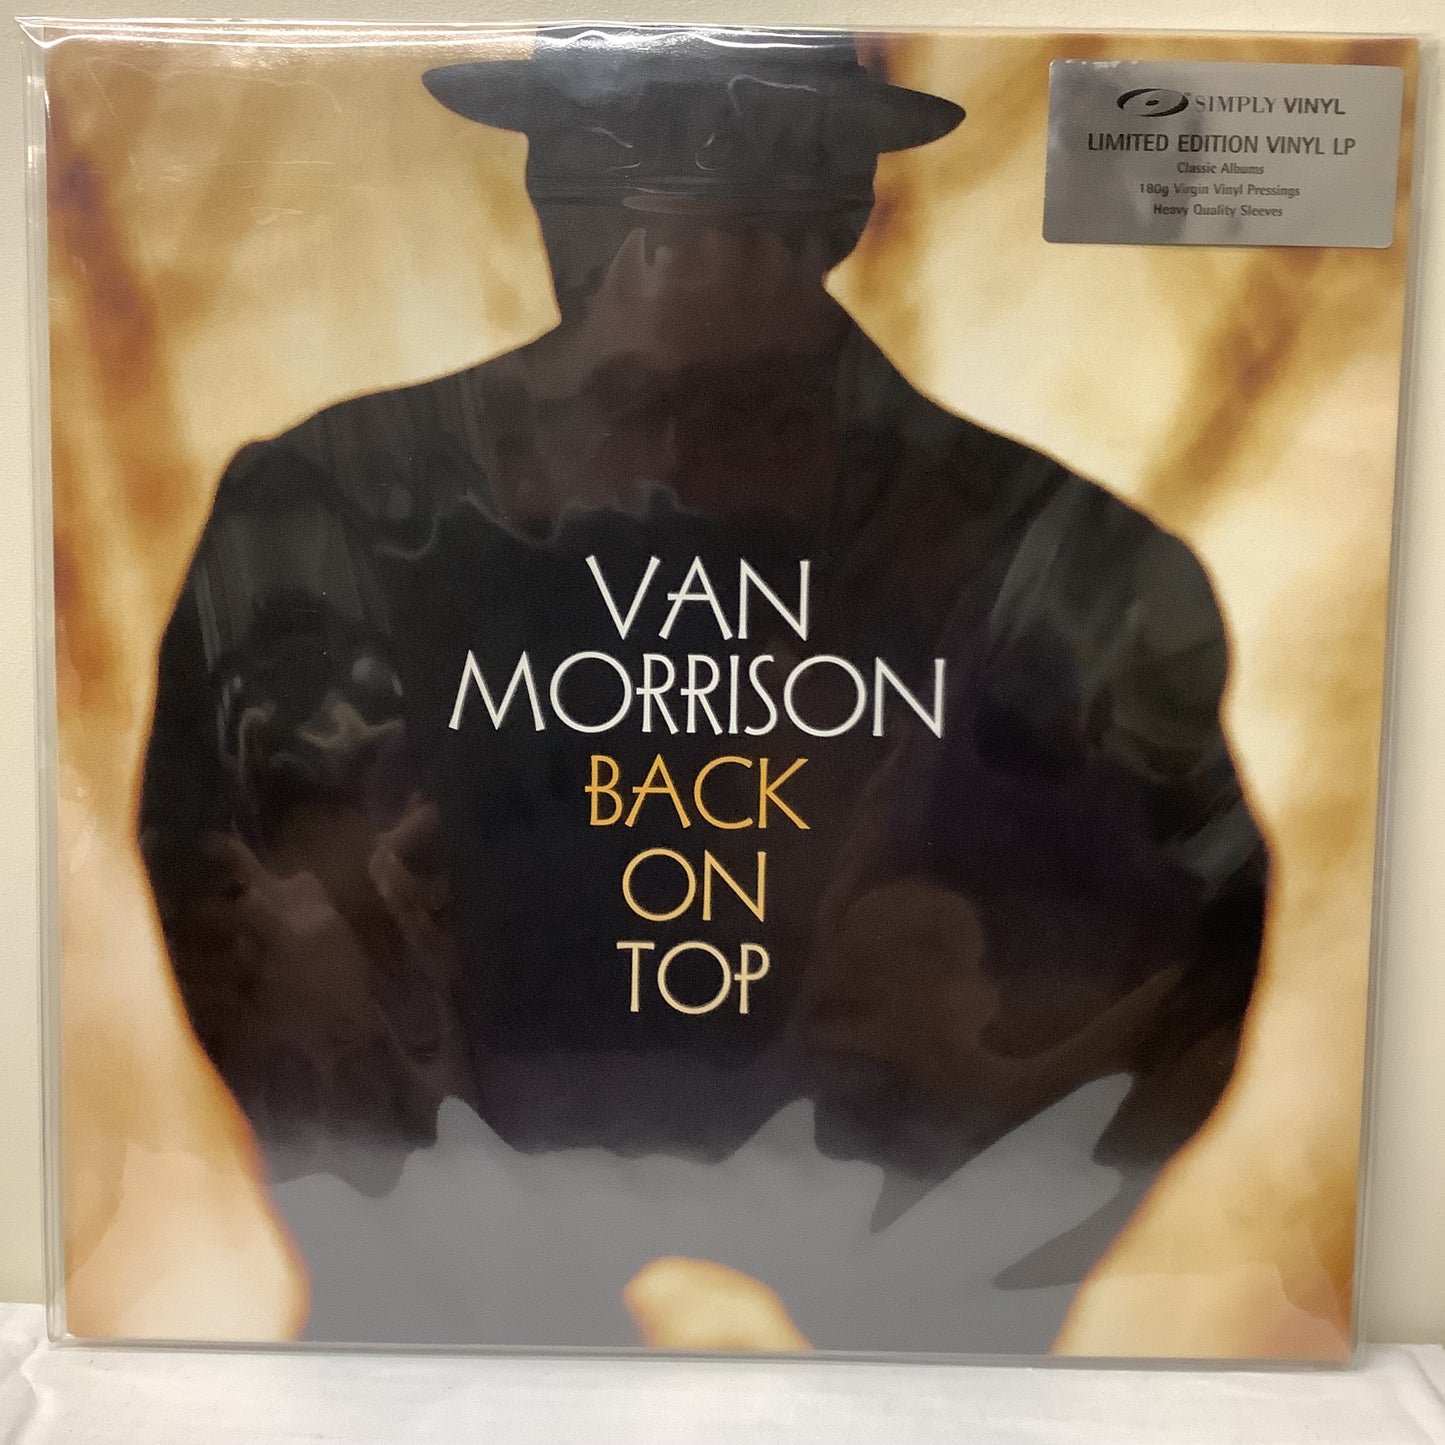 Van Morrison - Back on Top - Simply Vinyl LP